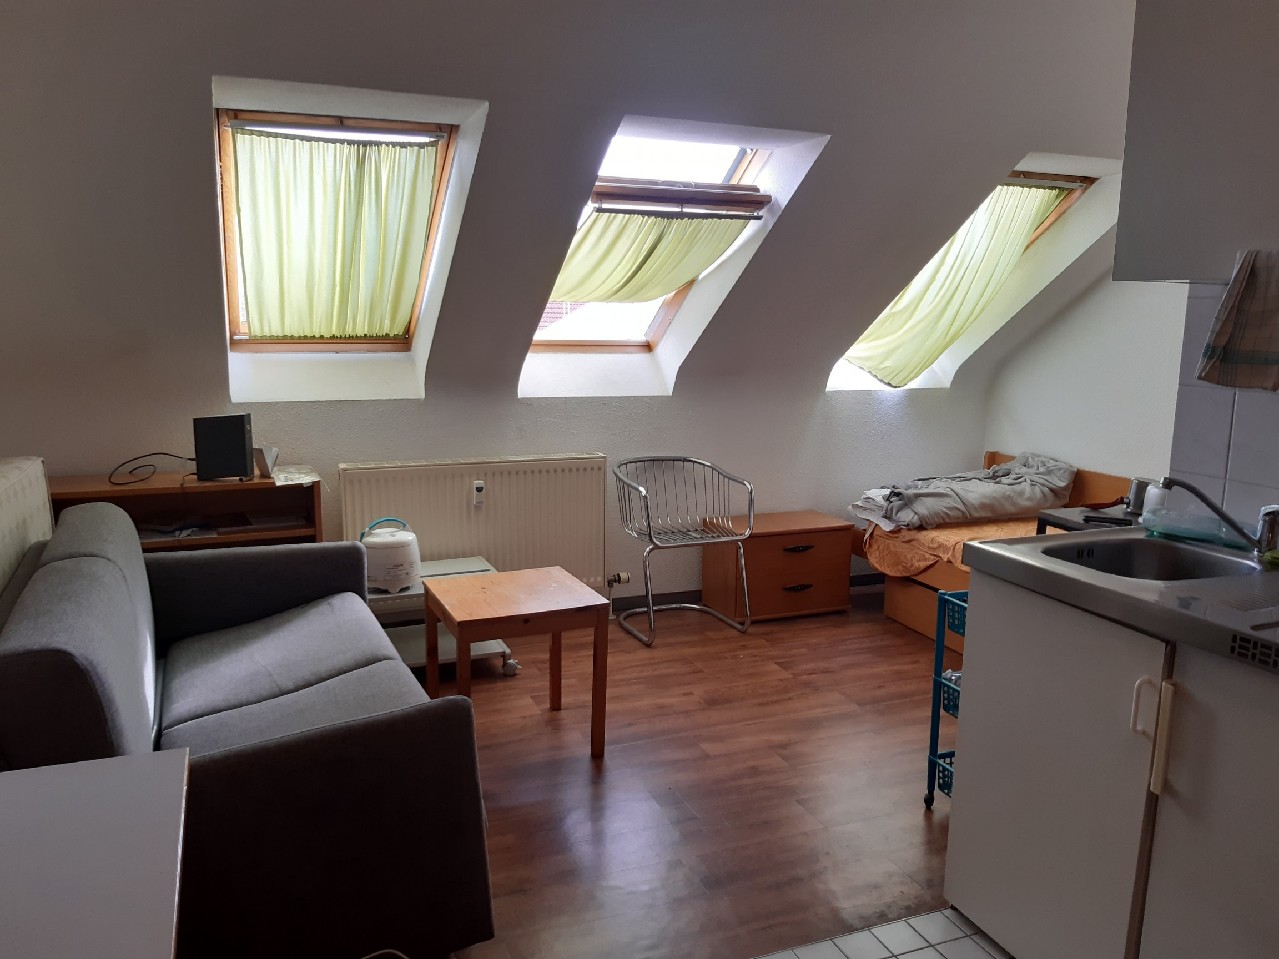 MA-Rheinau, Halmhuberstraße 4: Möbliertes Appartement sucht neuen Mieter